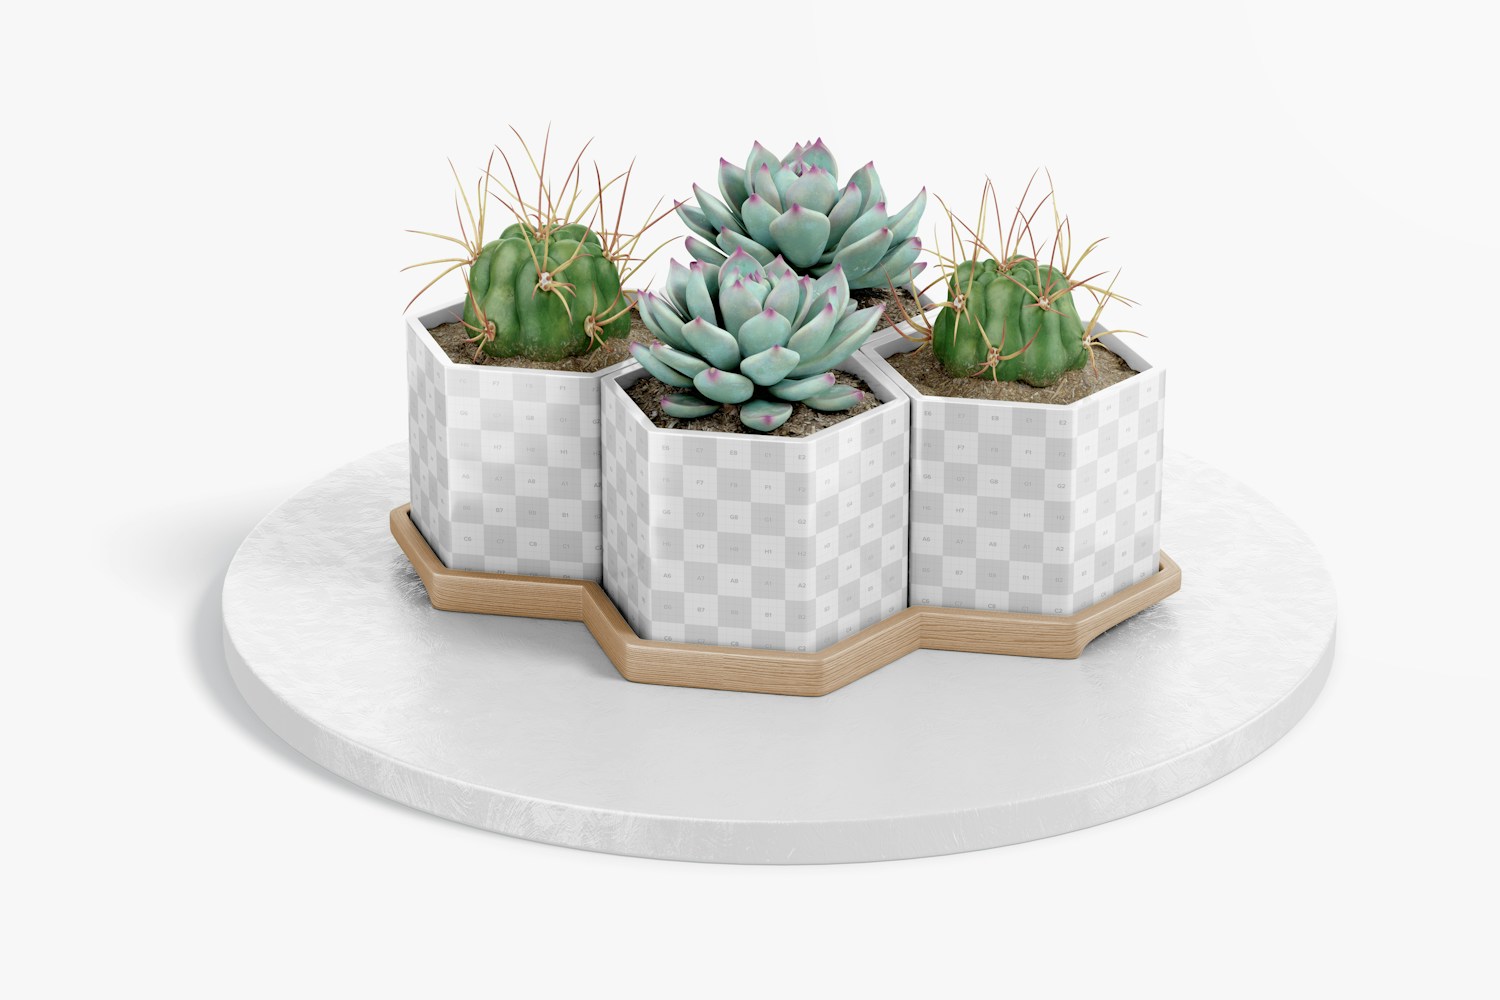 Hexagonal Pots with Bamboo Tray Mockup